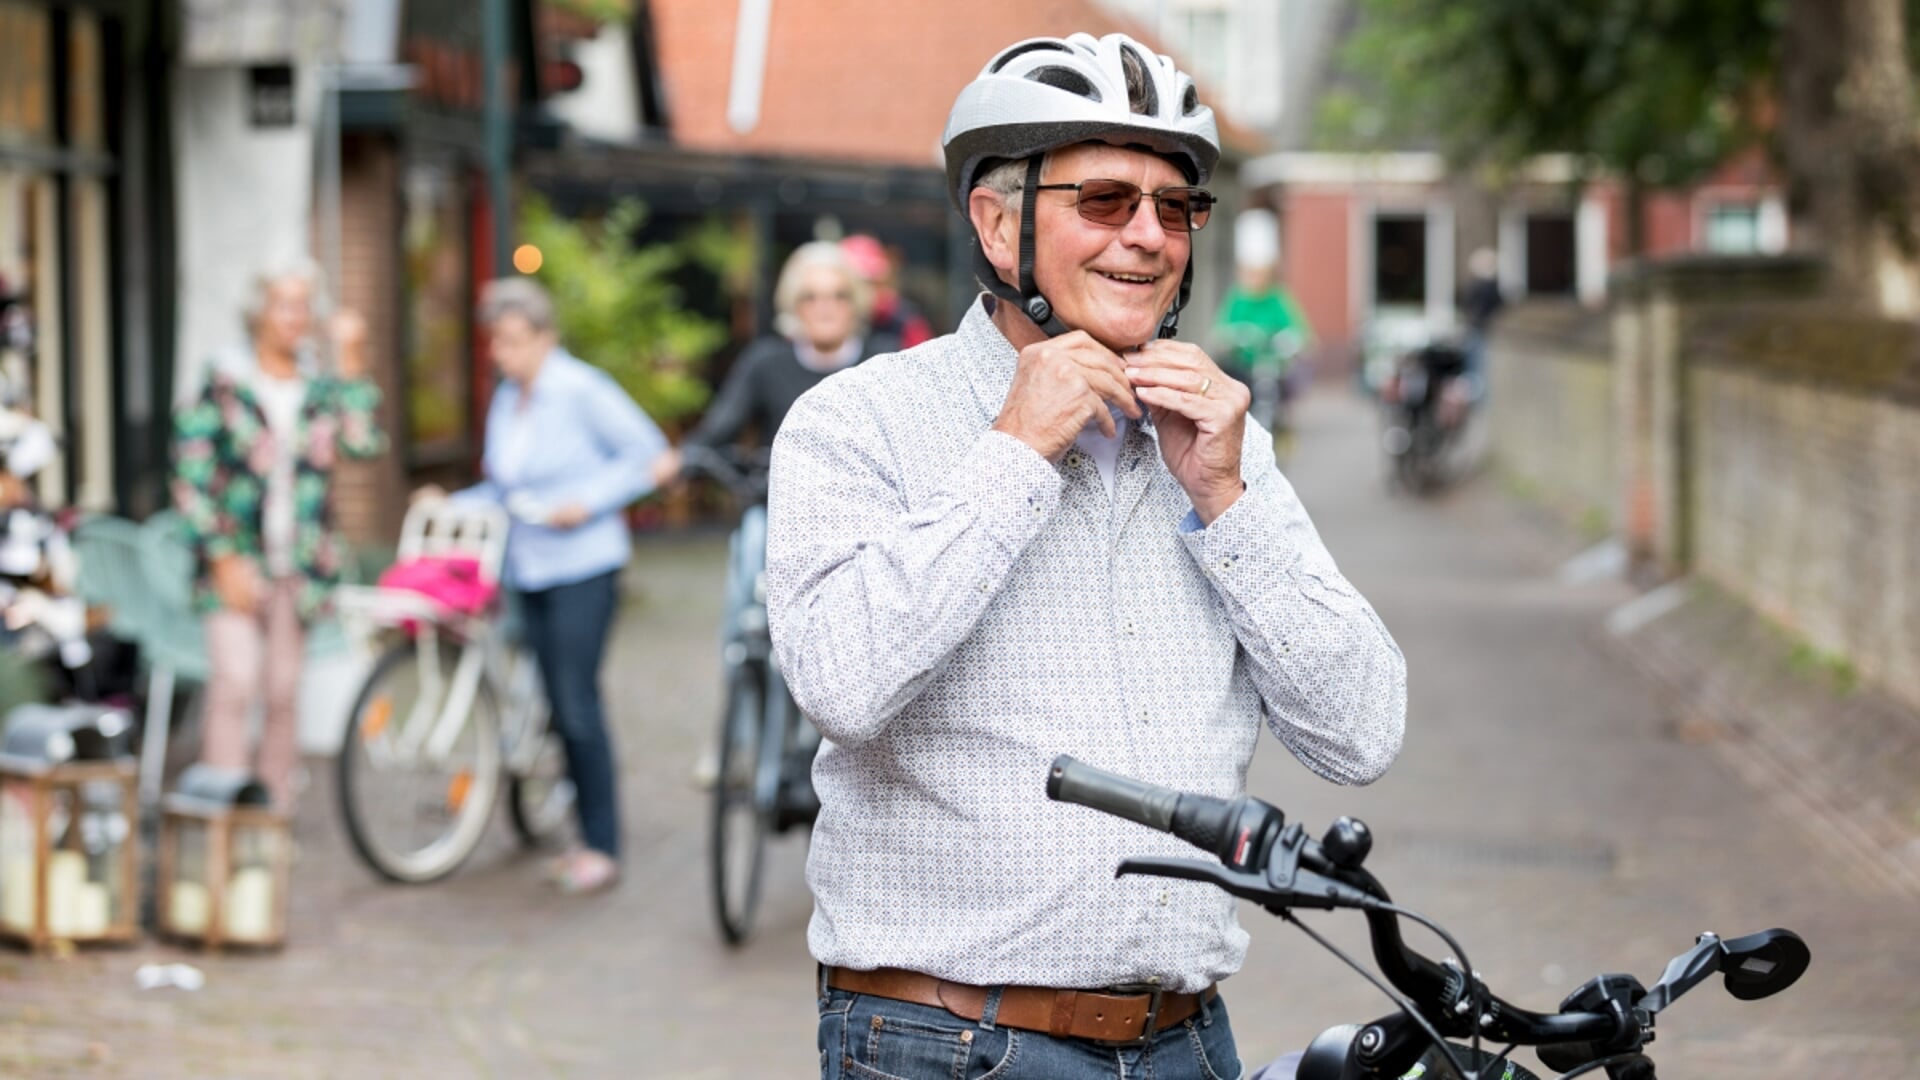 Het programma 'Doortrappen' start in april met fietslessen voor senioren.